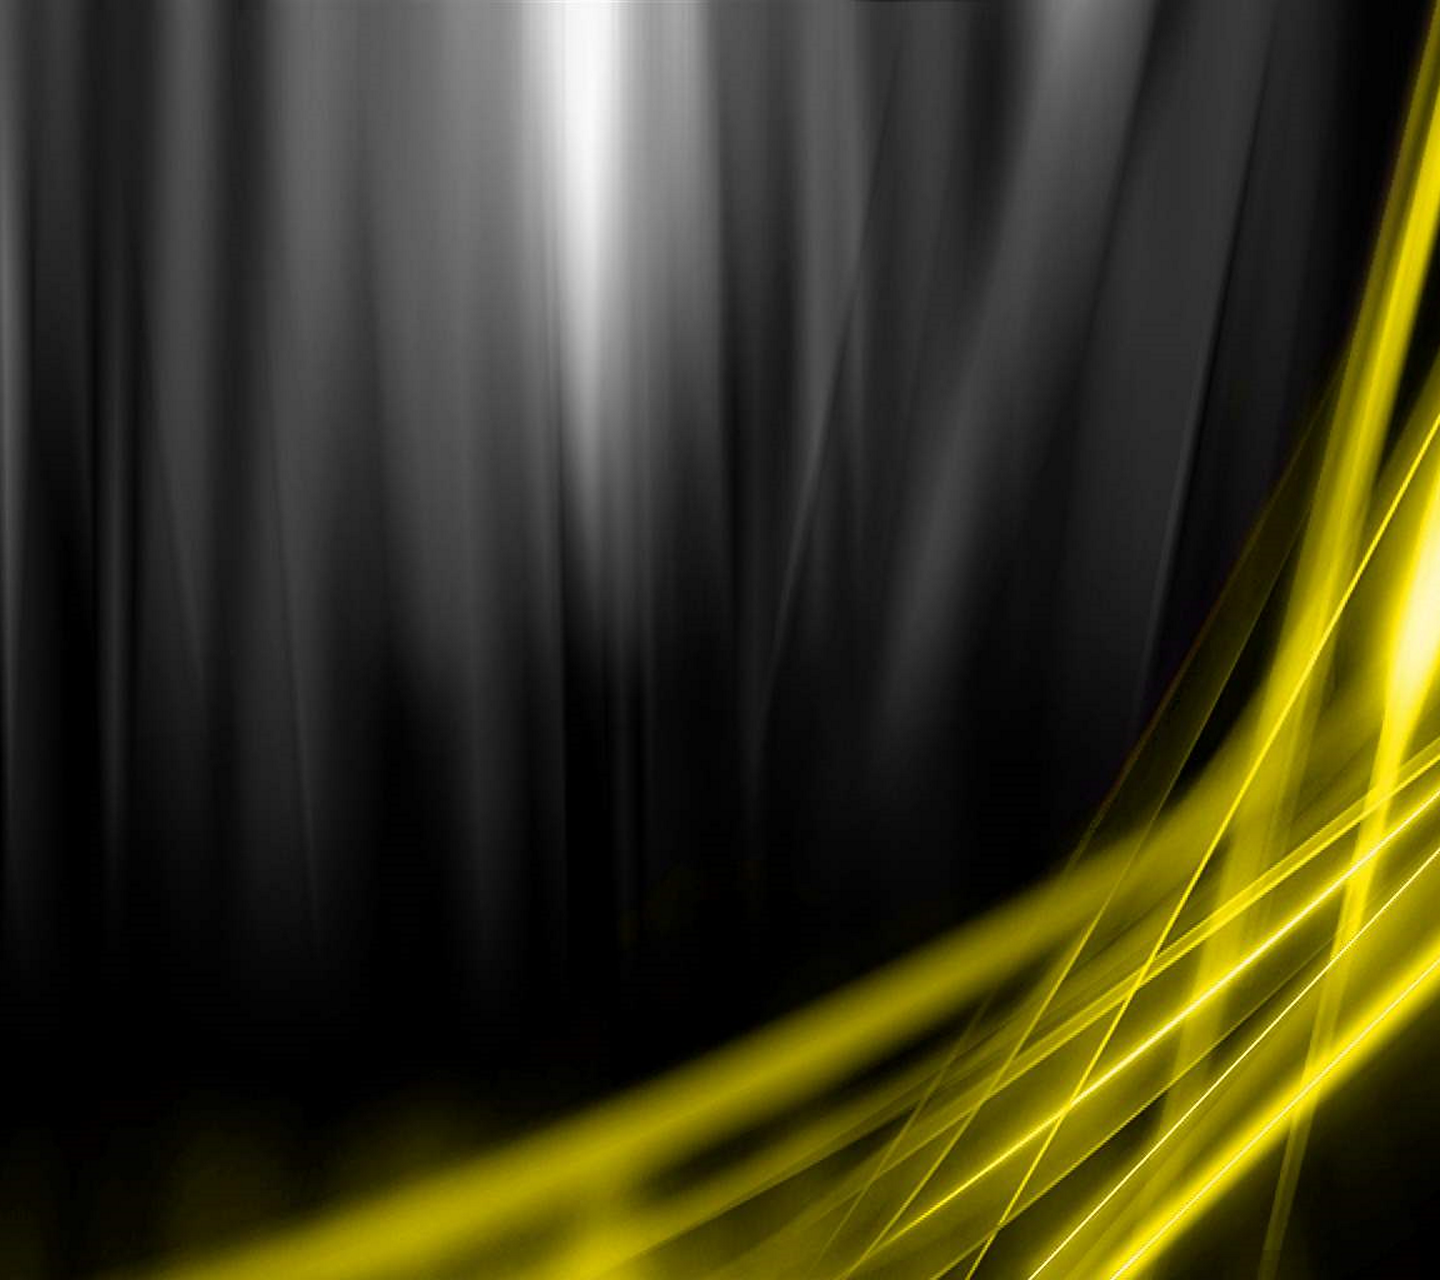 48+] Black and Yellow HD Wallpaper - WallpaperSafari